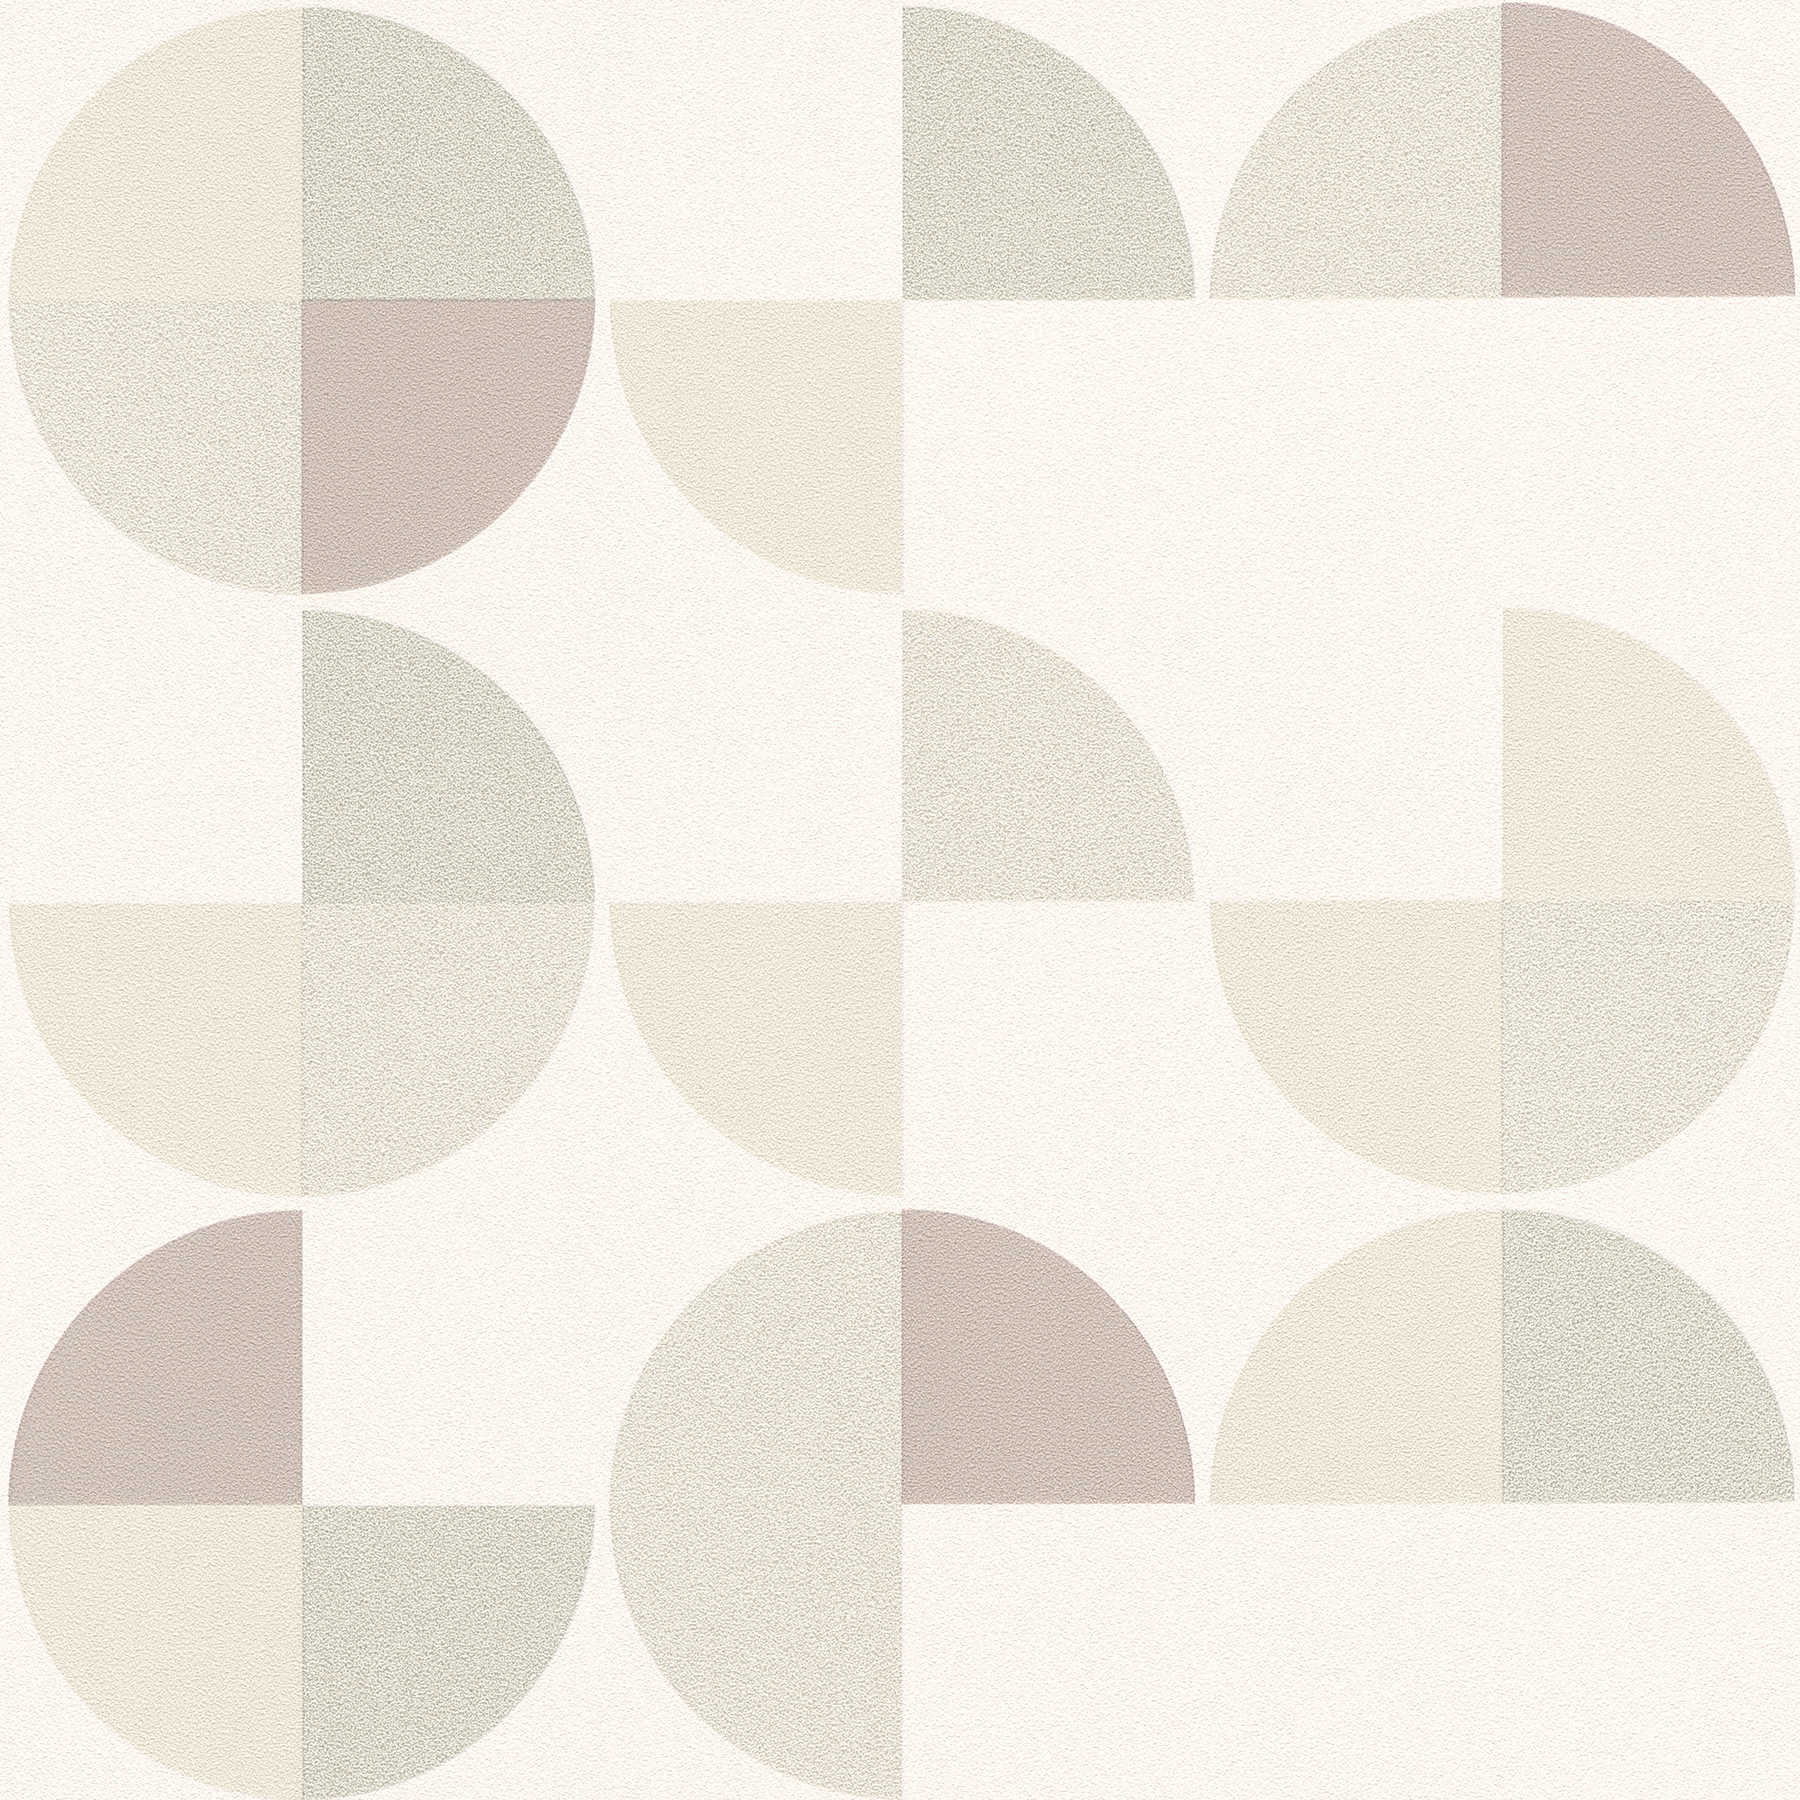         Papier peint à motifs géométriques de style scandinave - gris, beige, blanc
    